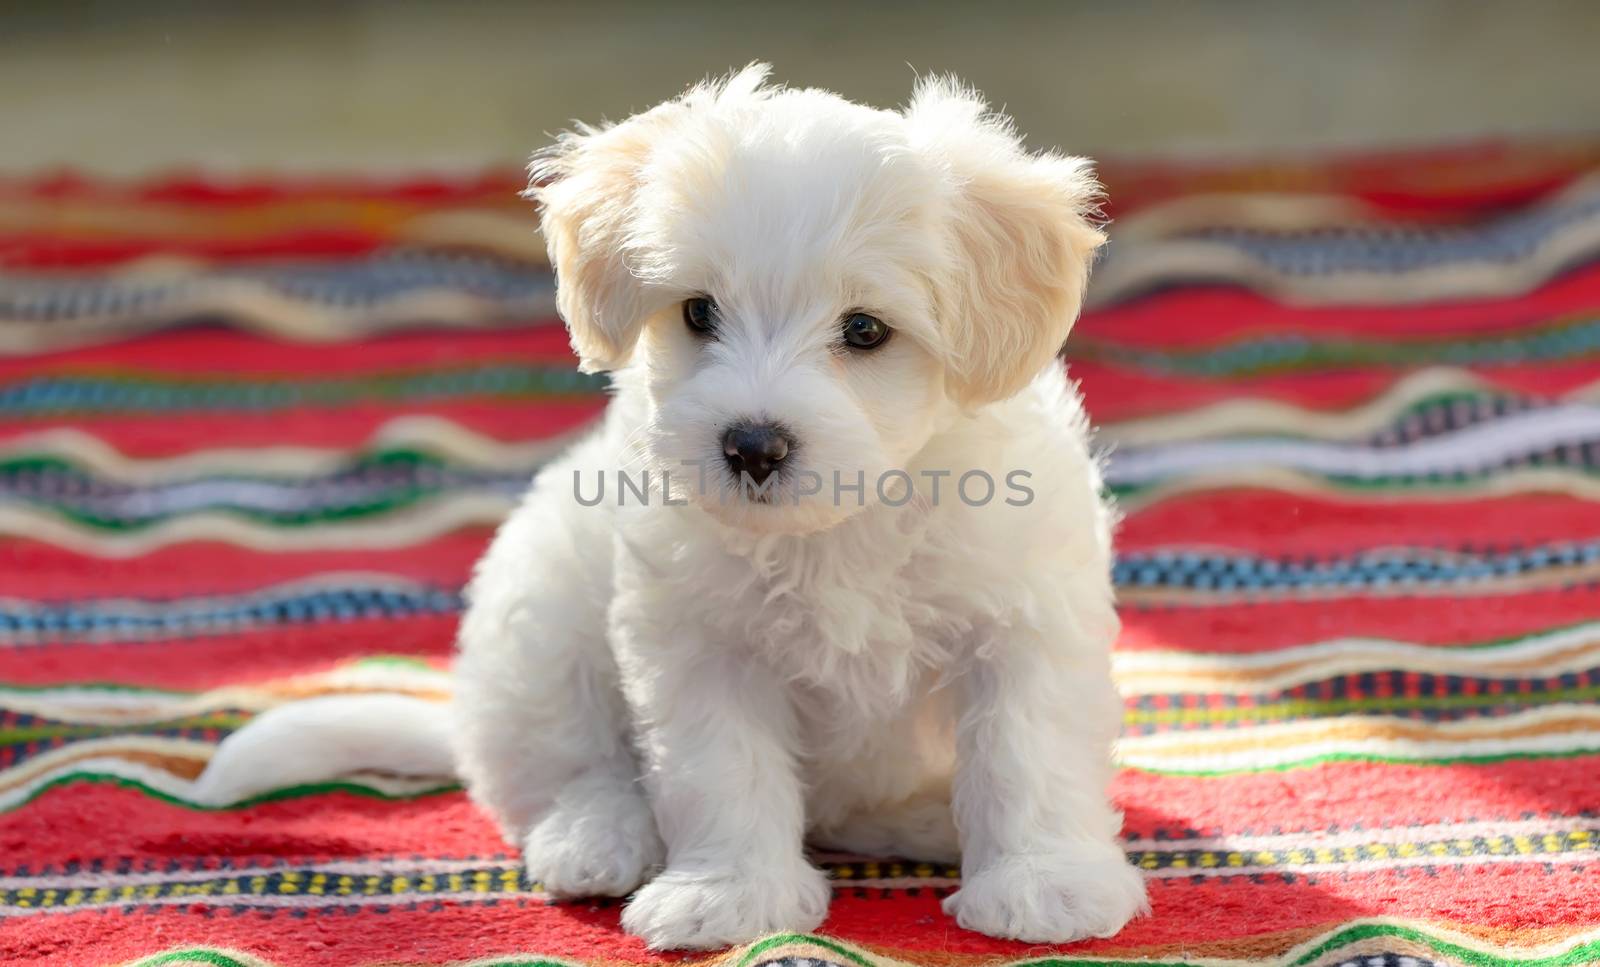 White puppy maltese dog sitting on carpet by jordachelr